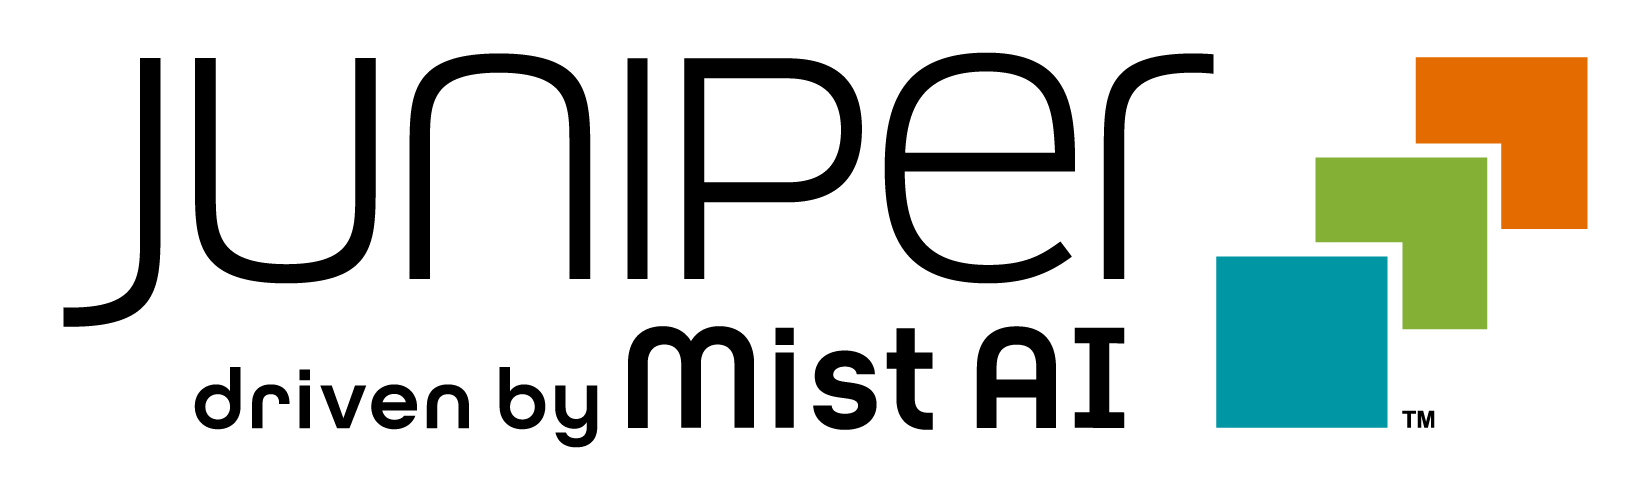 Juniper Mist - a campus network provider logo